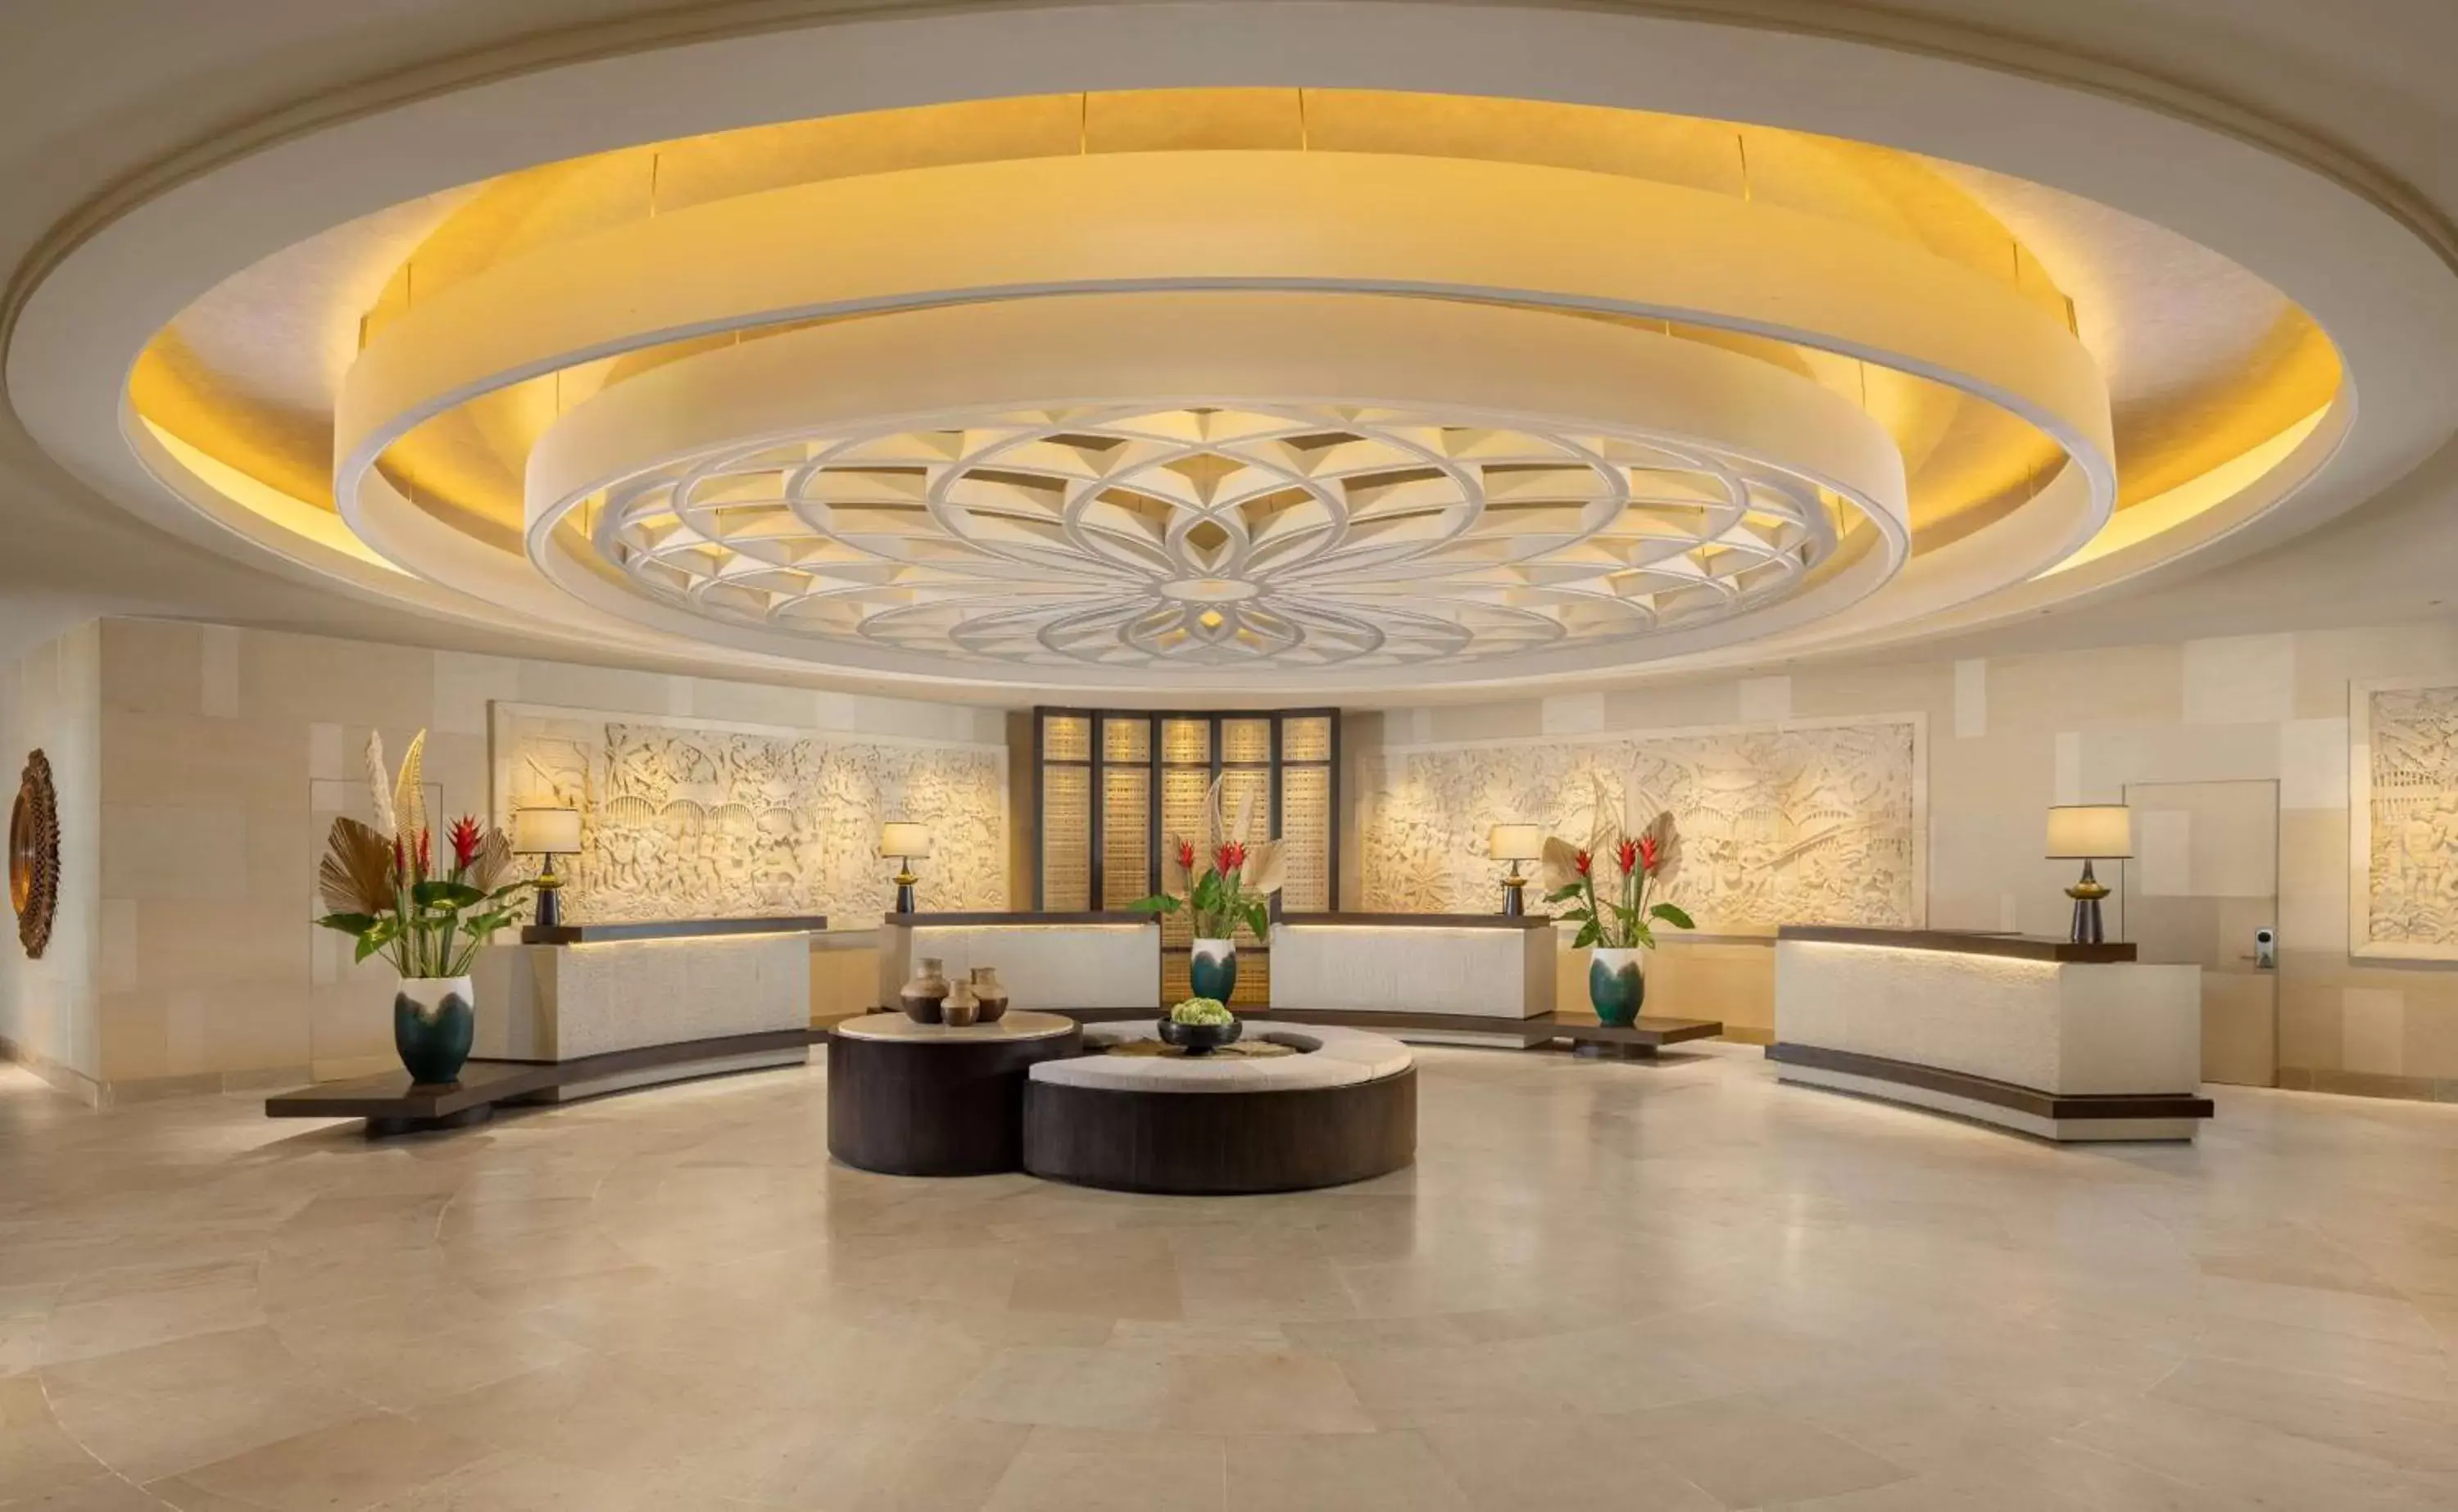 Lobby or reception, Lobby/Reception in Hilton Bali Resort